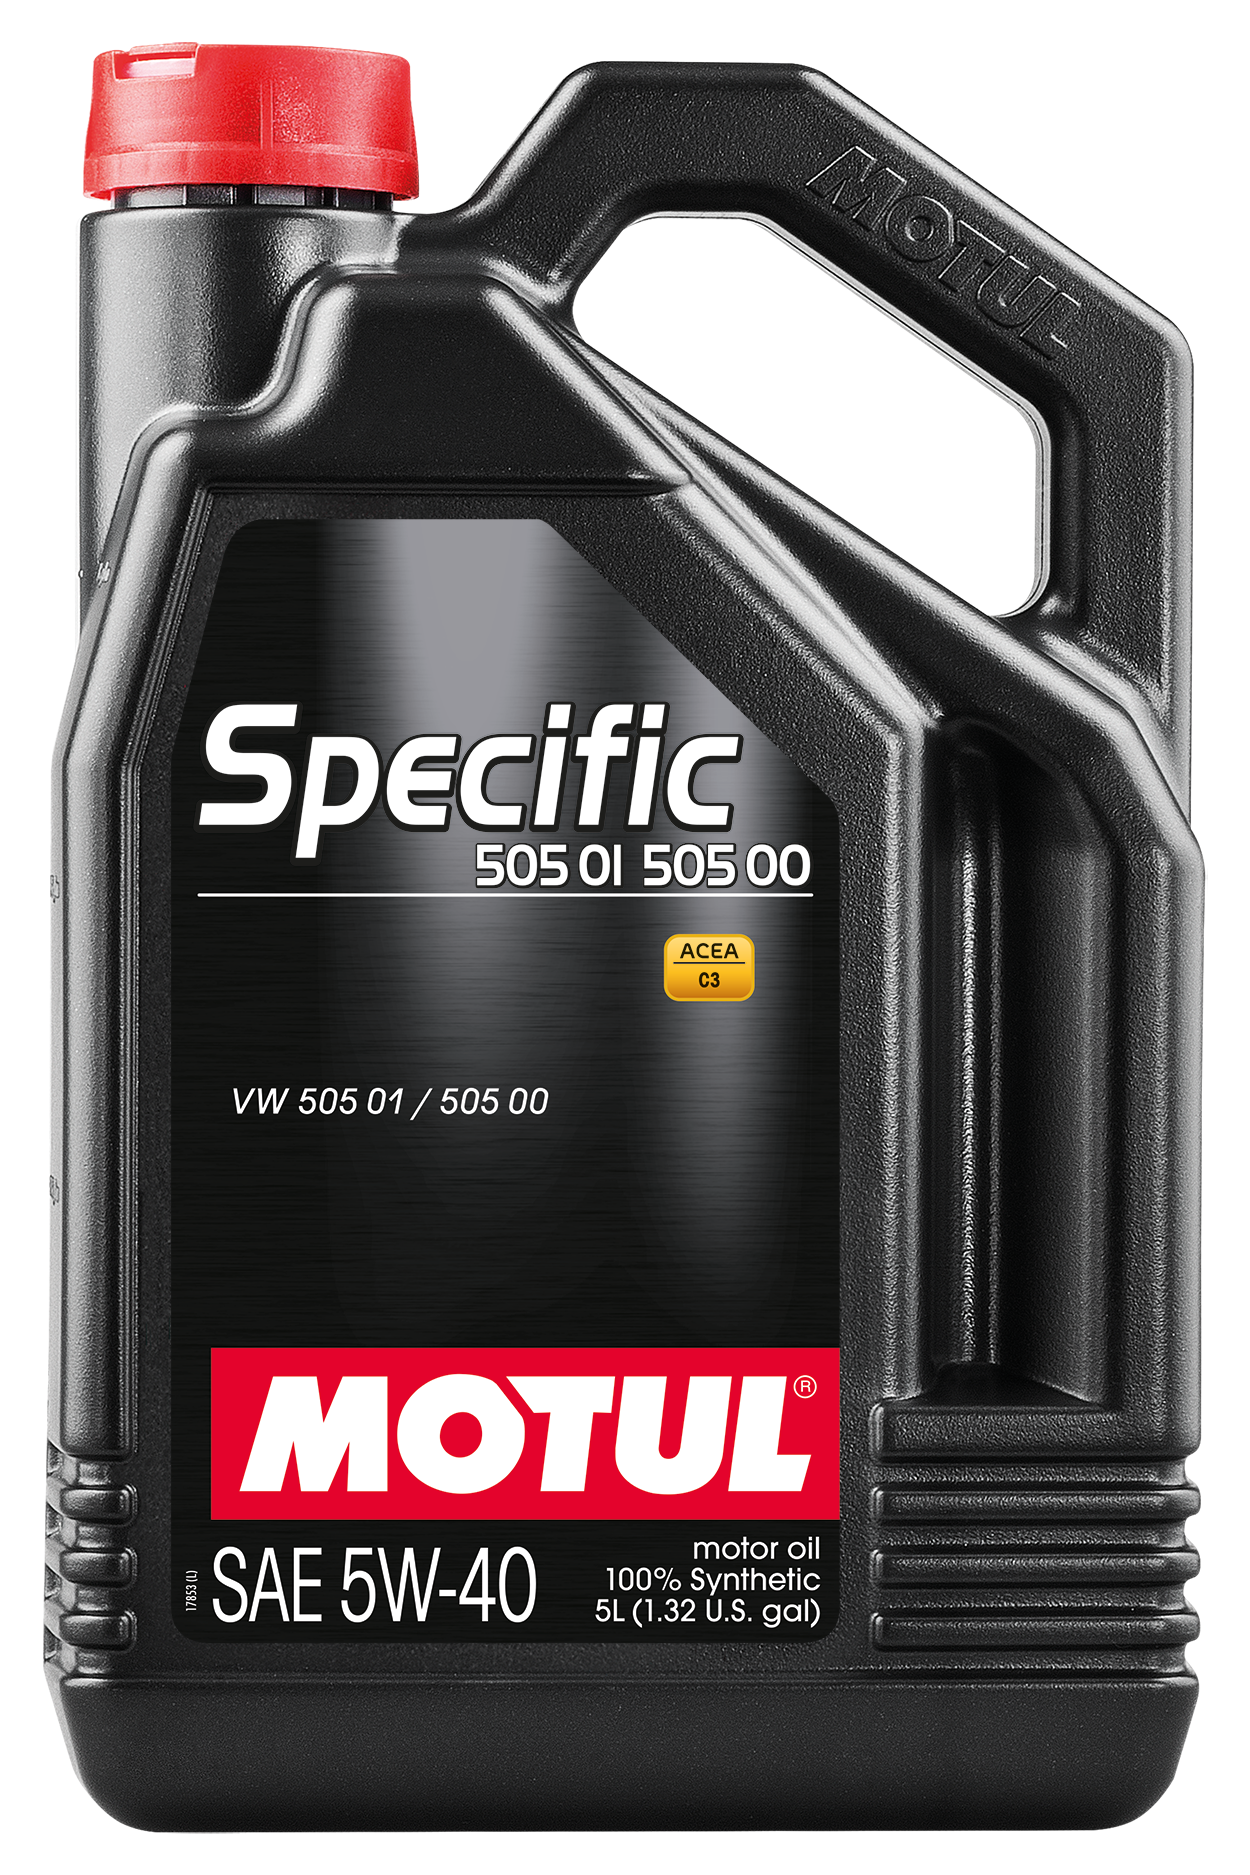 Motul SPECIFIC 505 01 502 00 5W-40, 5 liter